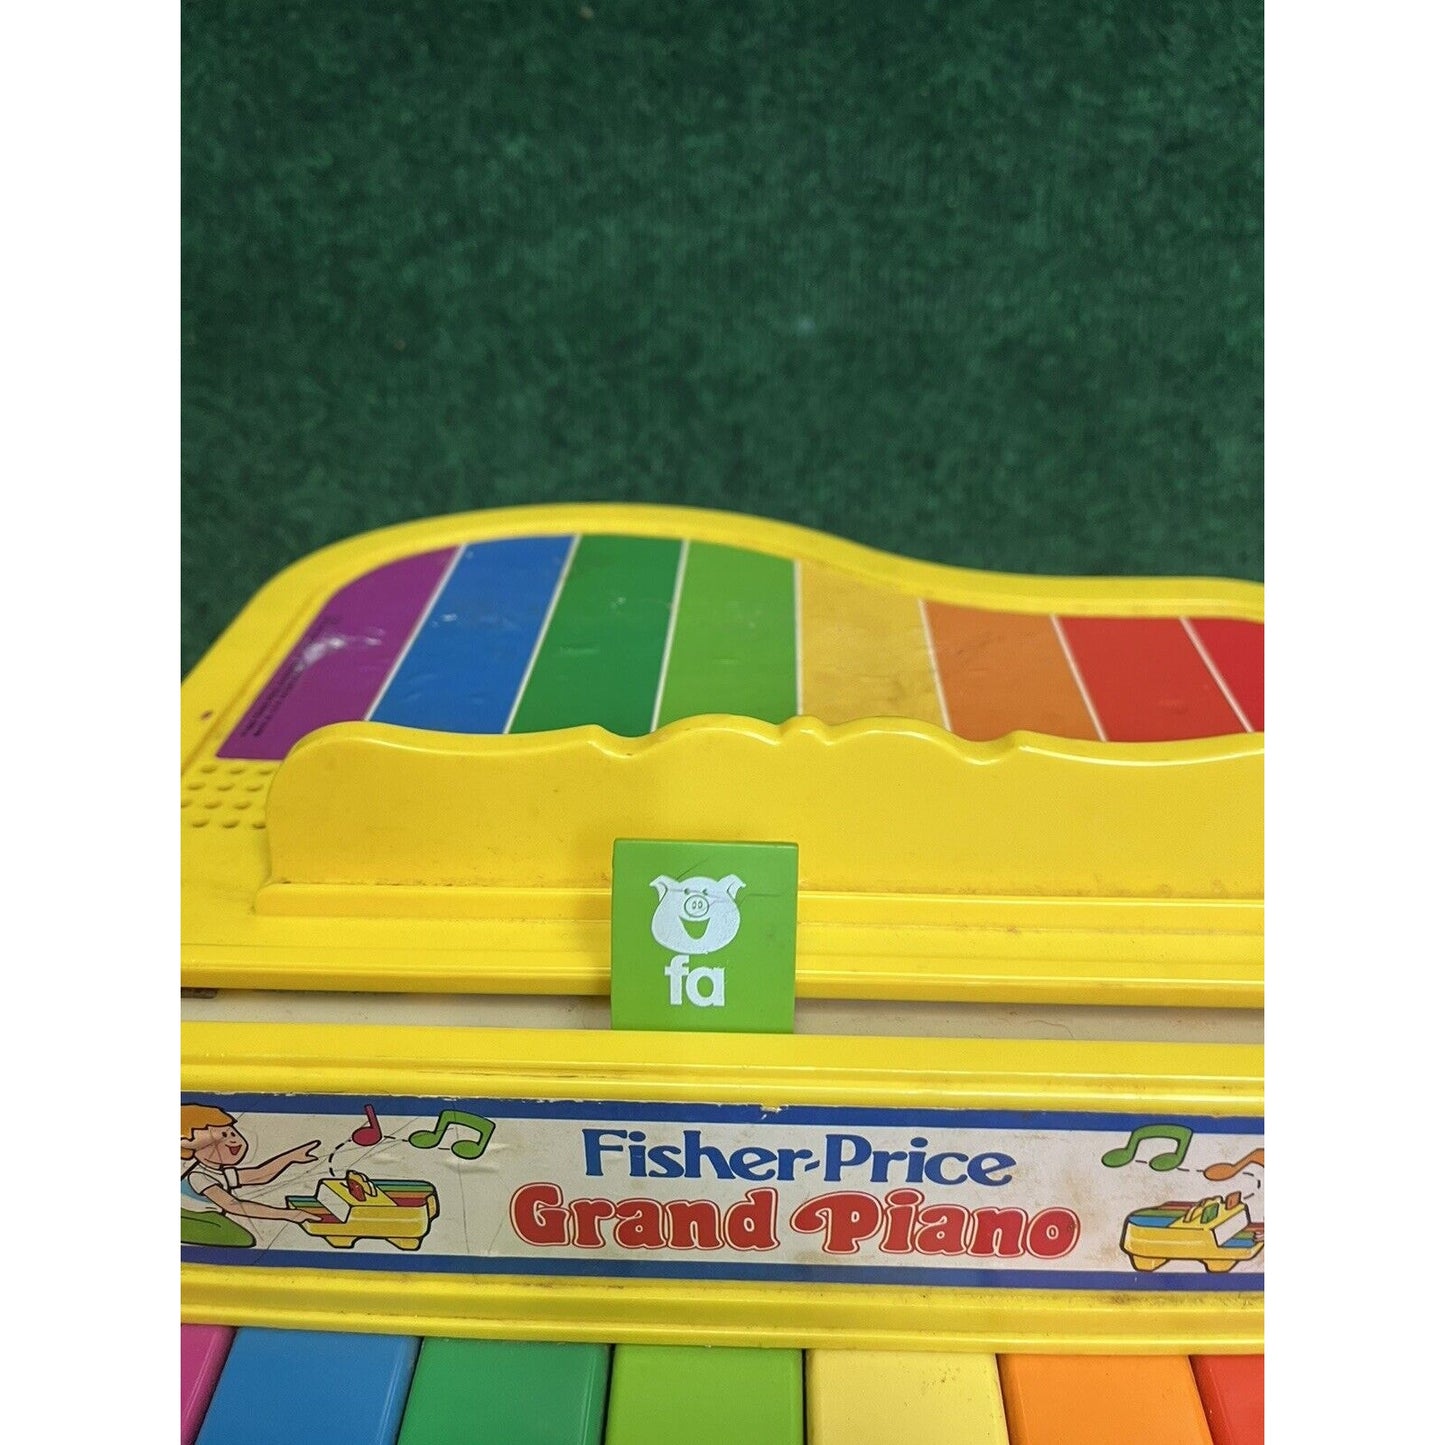 Fisher Price Grand Piano (2201) 1986 Rainbow Keys Bright Yellow